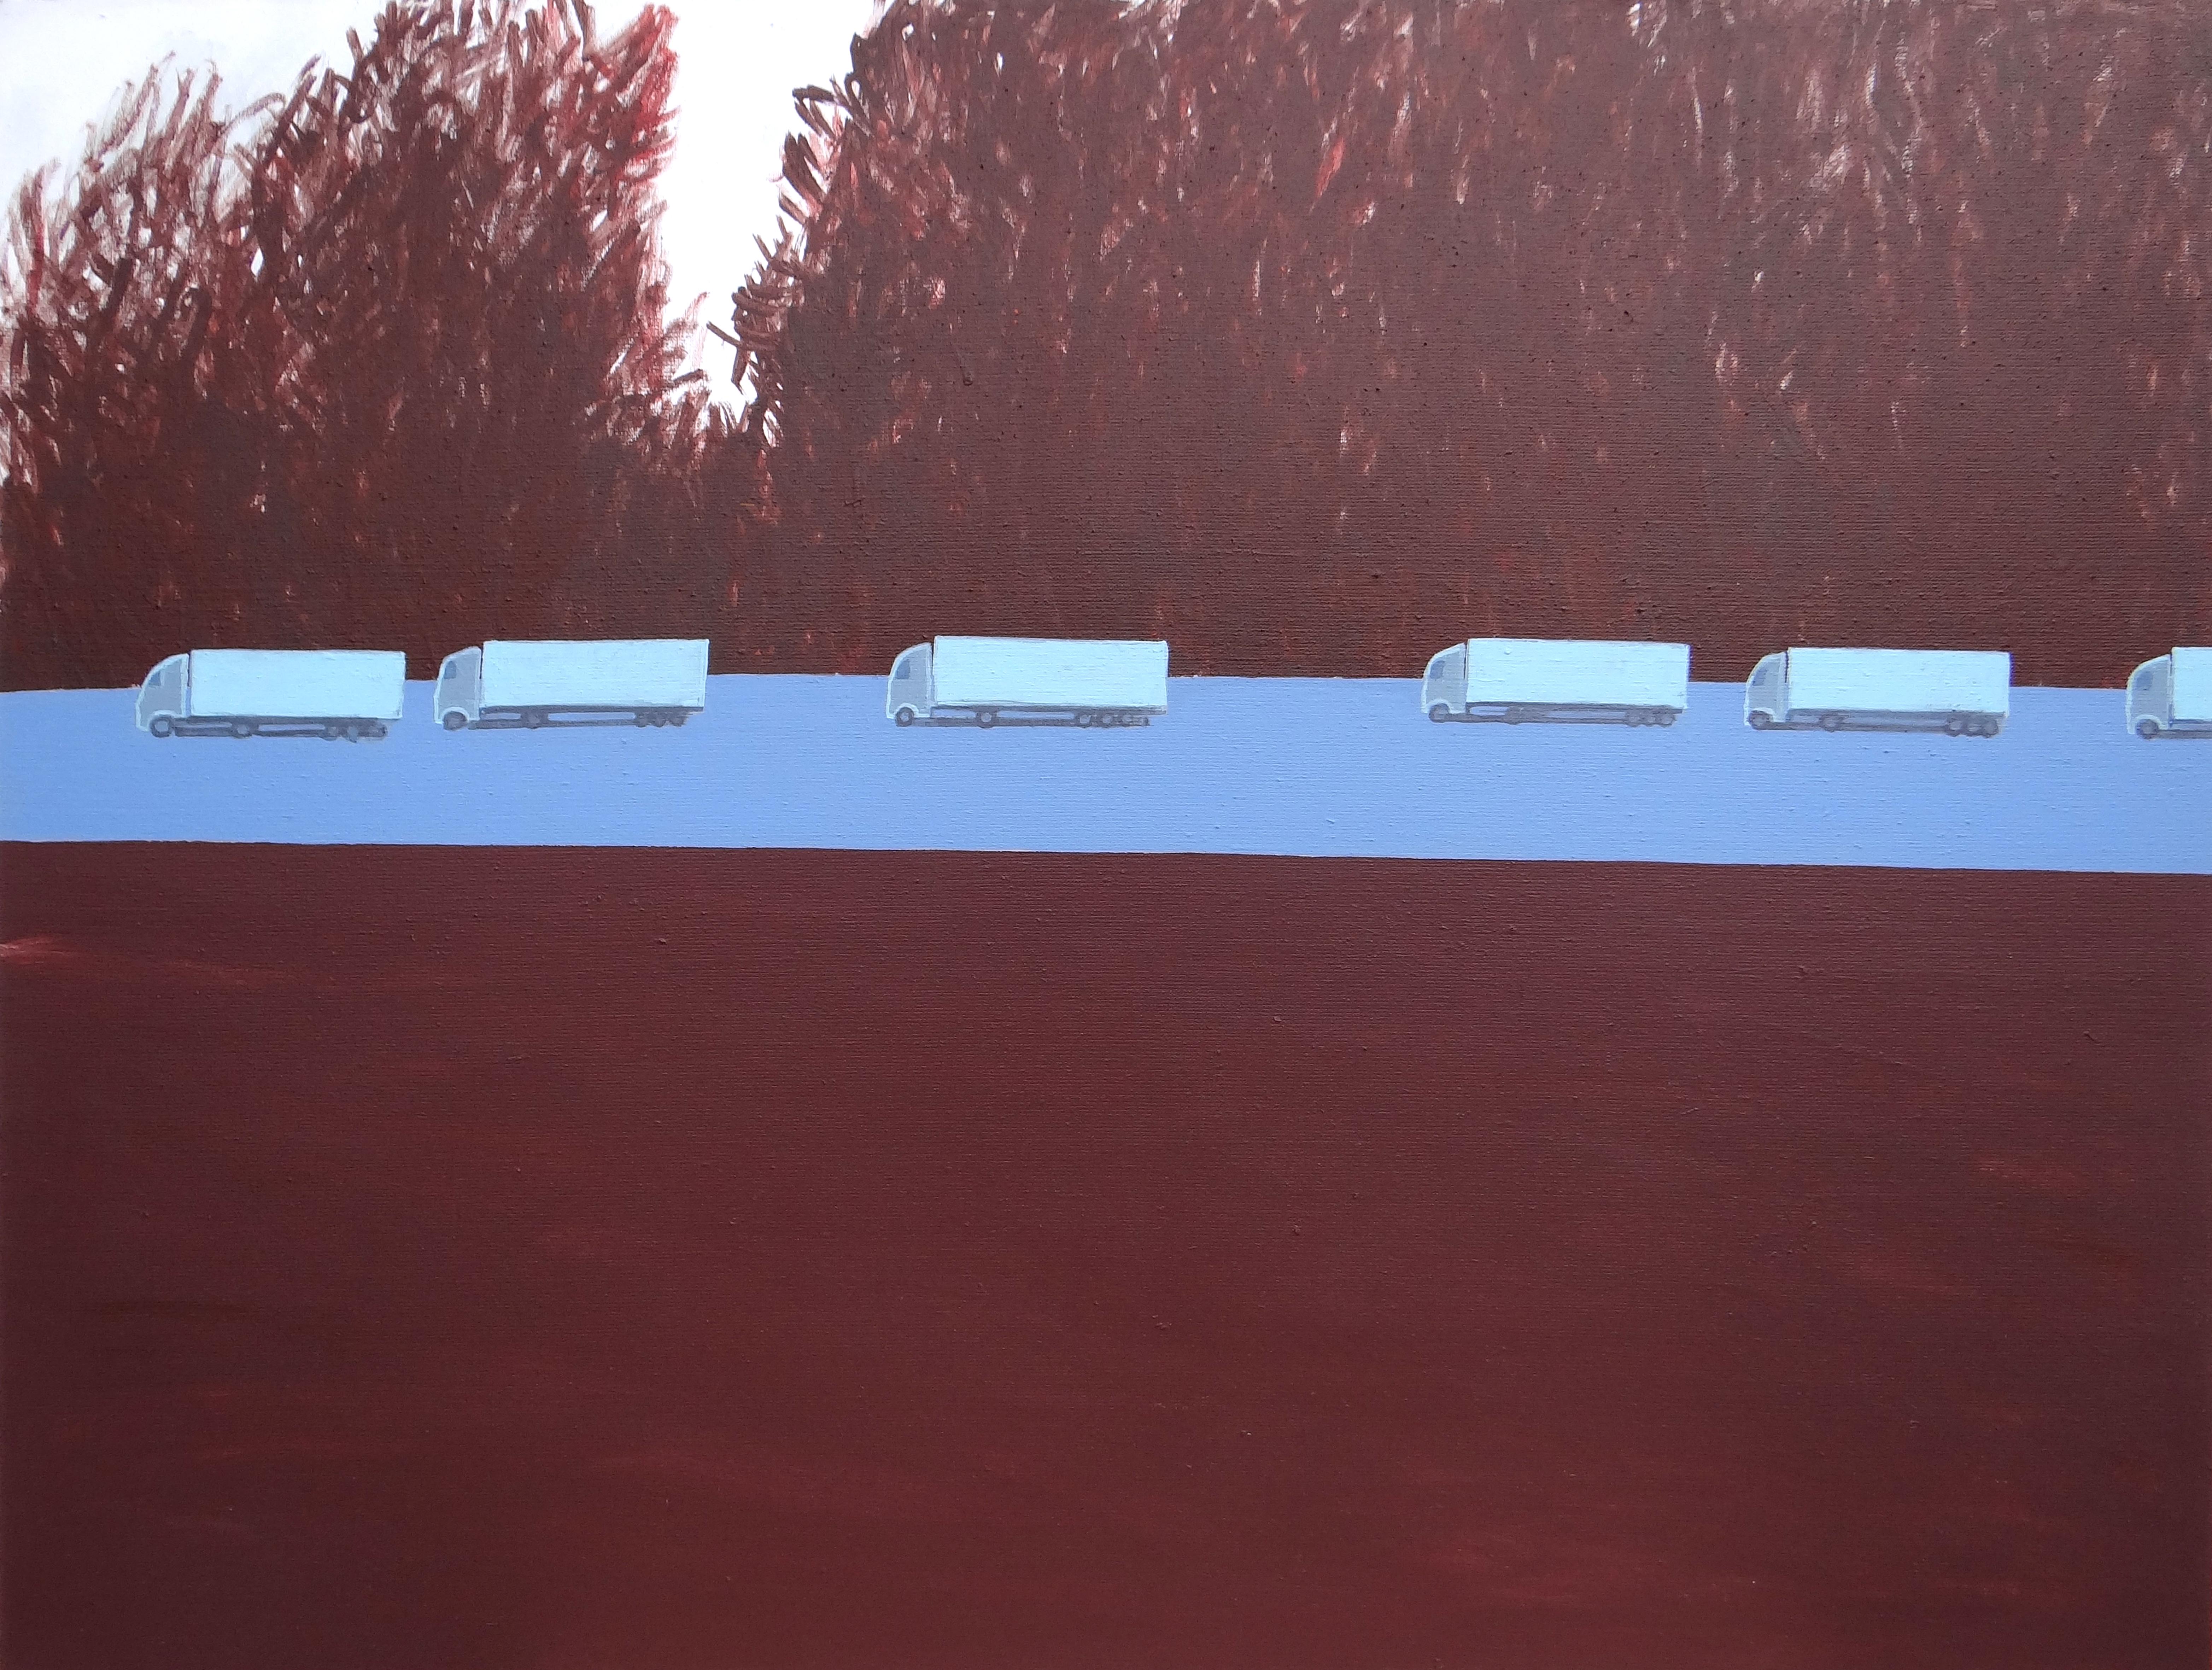 Colonne de camions 1 - Peinture expressive contemporaine de paysage, avenue des arbres